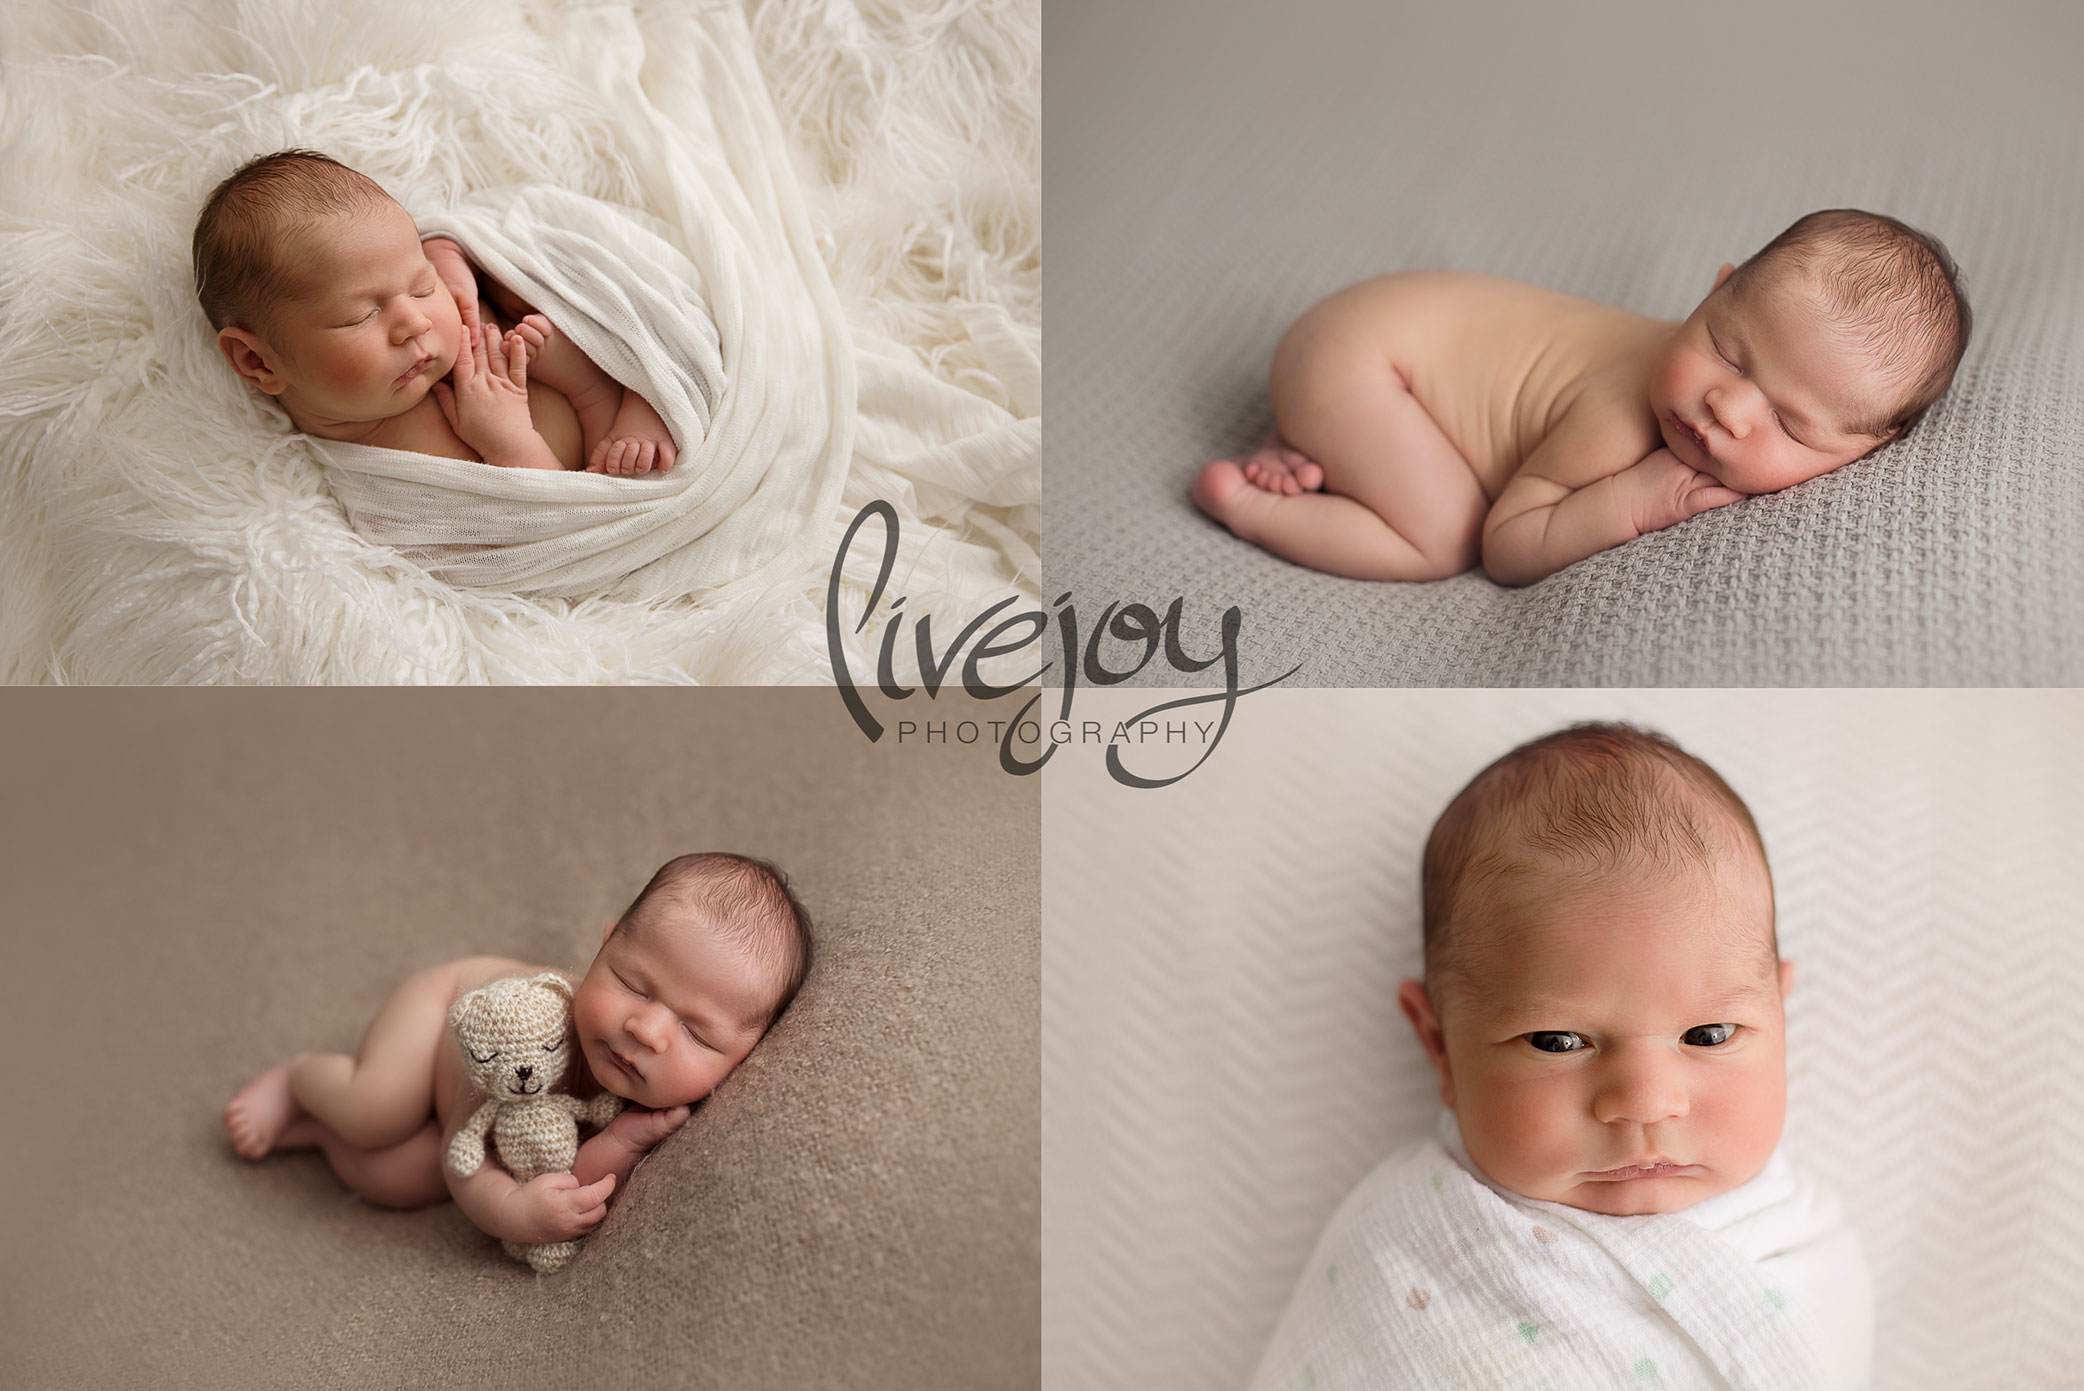 Newborn Boy Photography | Oregon | LiveJoy Photography